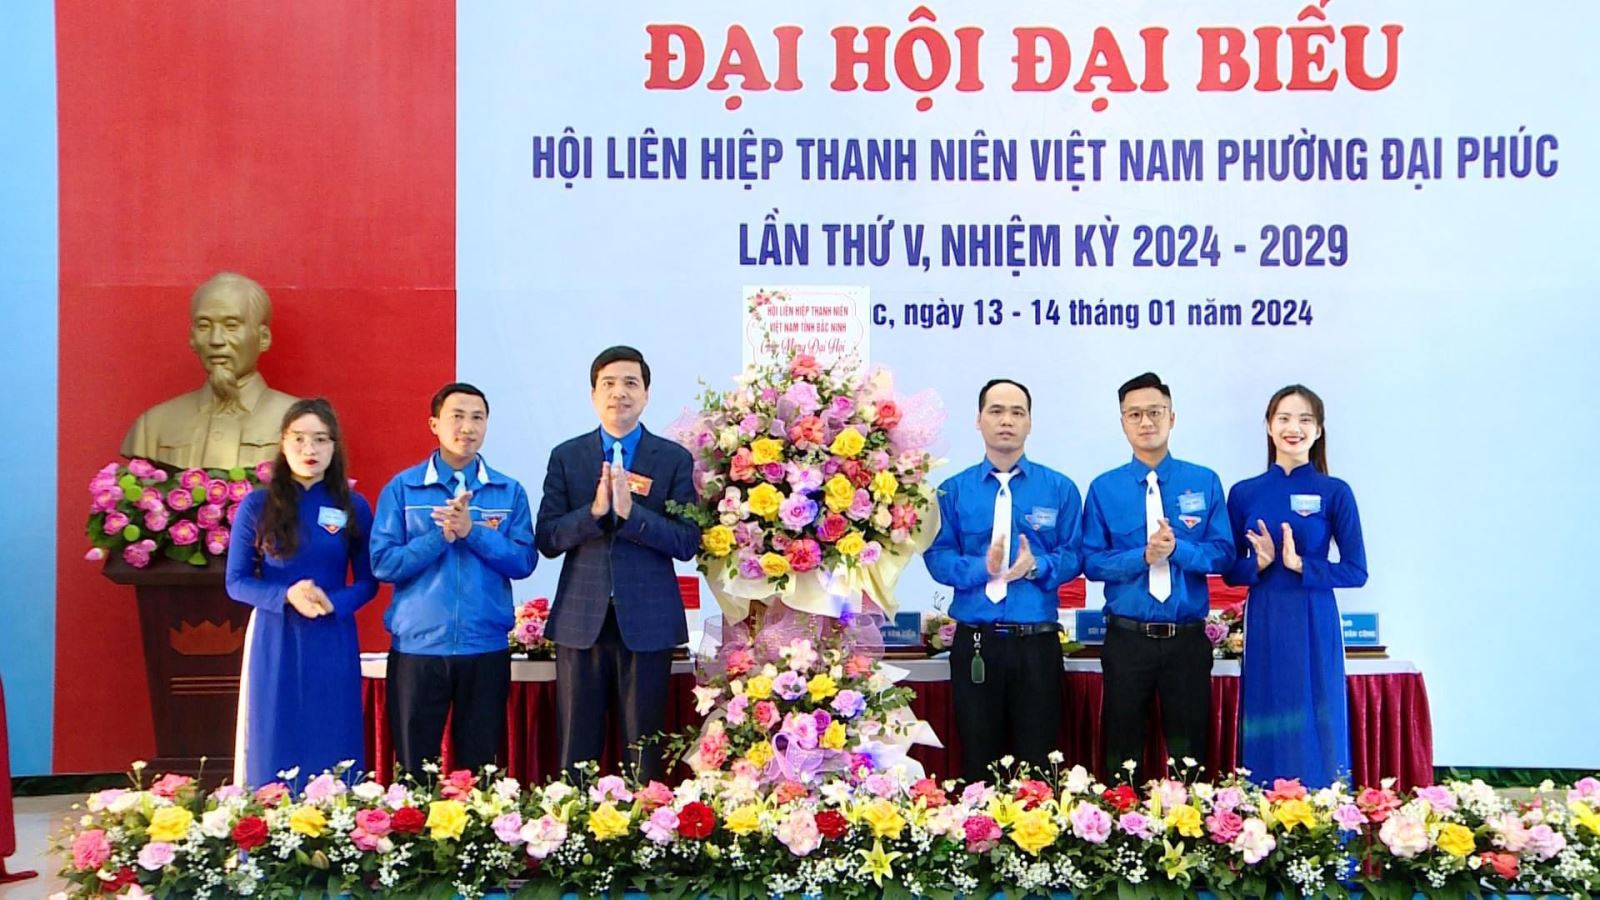 Đại hội Đại biểu Hội LHTN Việt Nam phường Đại Phúc khóa V, nhiệm kỳ 2024 - 2029